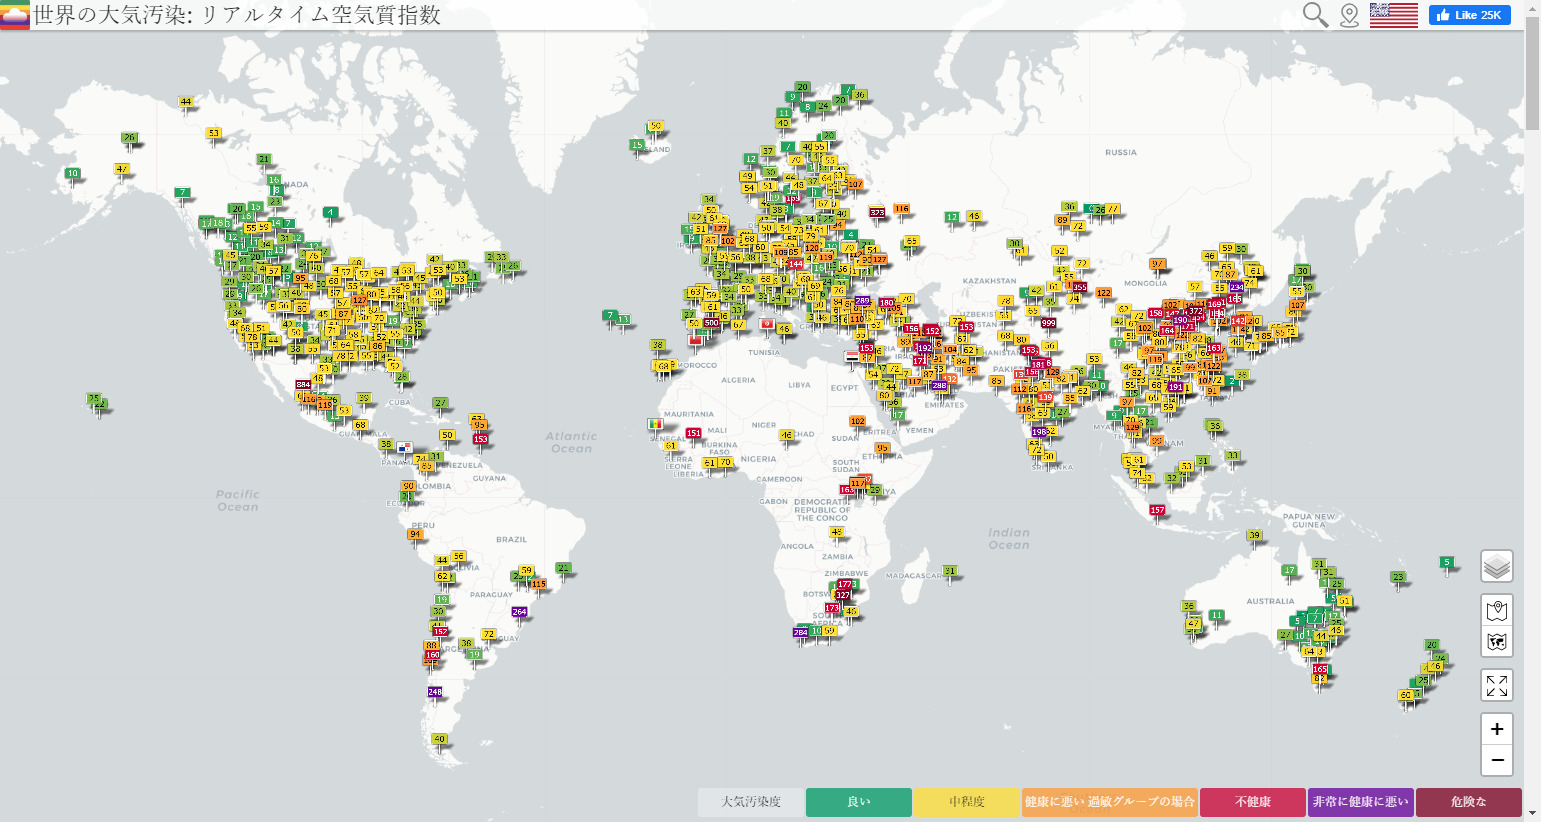 世界各地のリアルタイムな大気の状況が分かるWorld Air Quality Project.